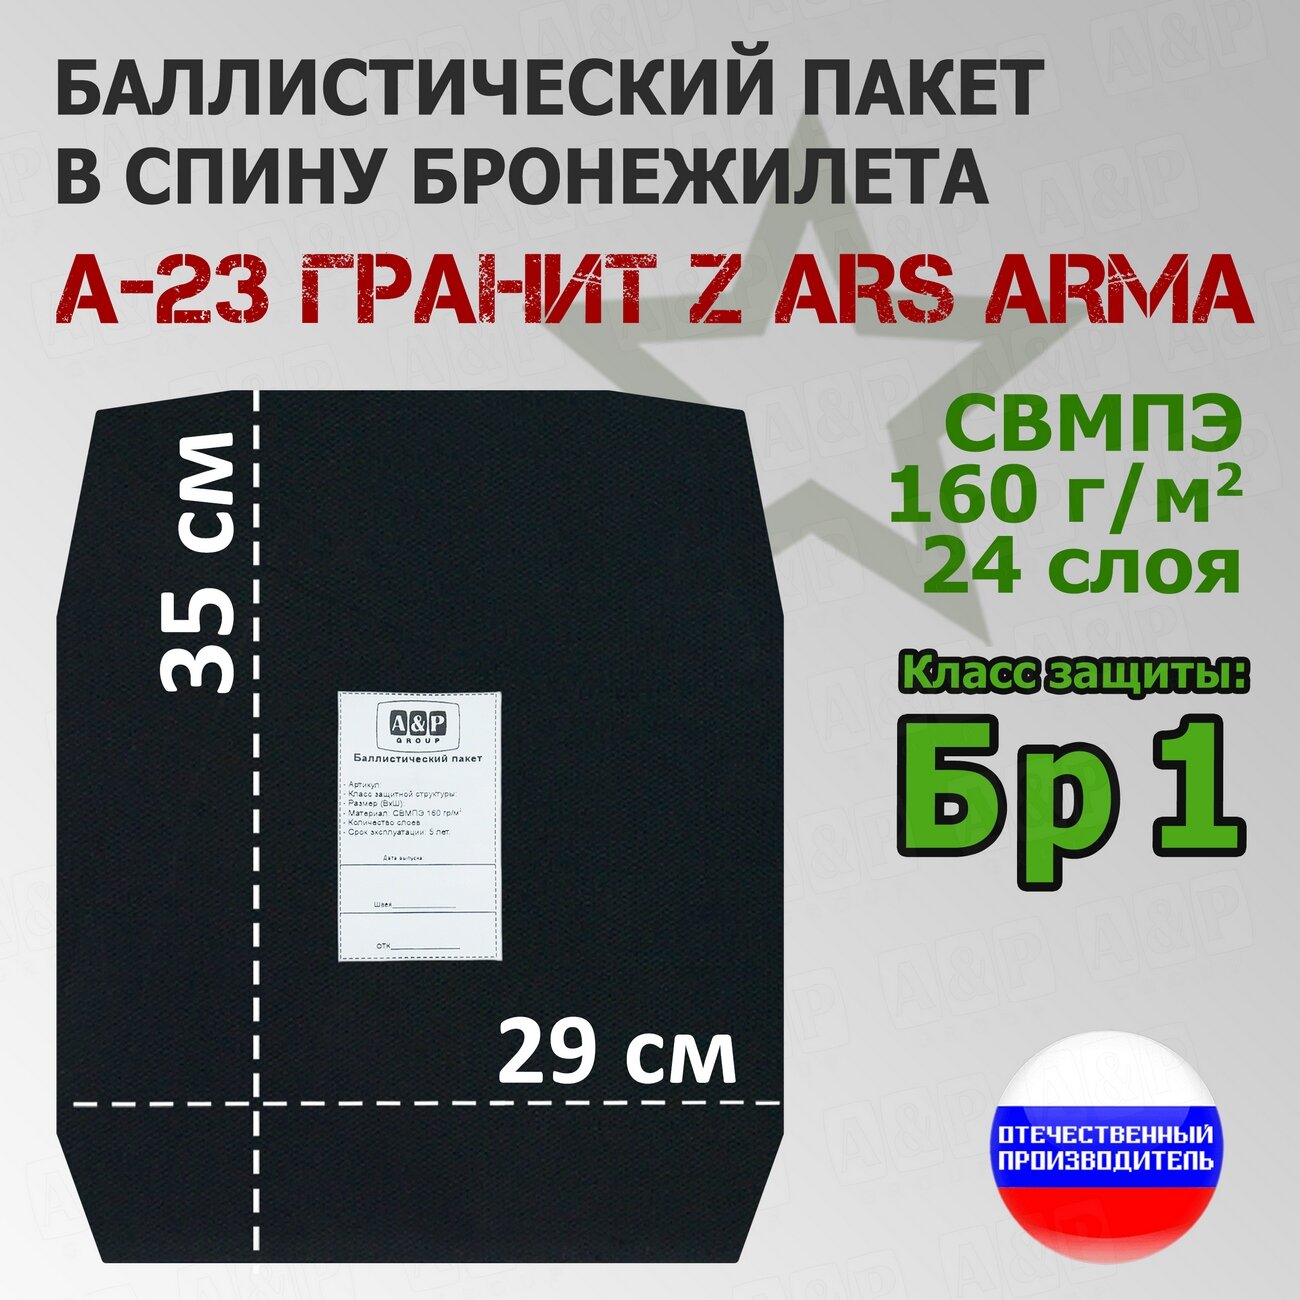 Баллистический пакет в спину бронежилета А-23 Гранит Z Ars Arma. Класс защитной структуры Бр 1.